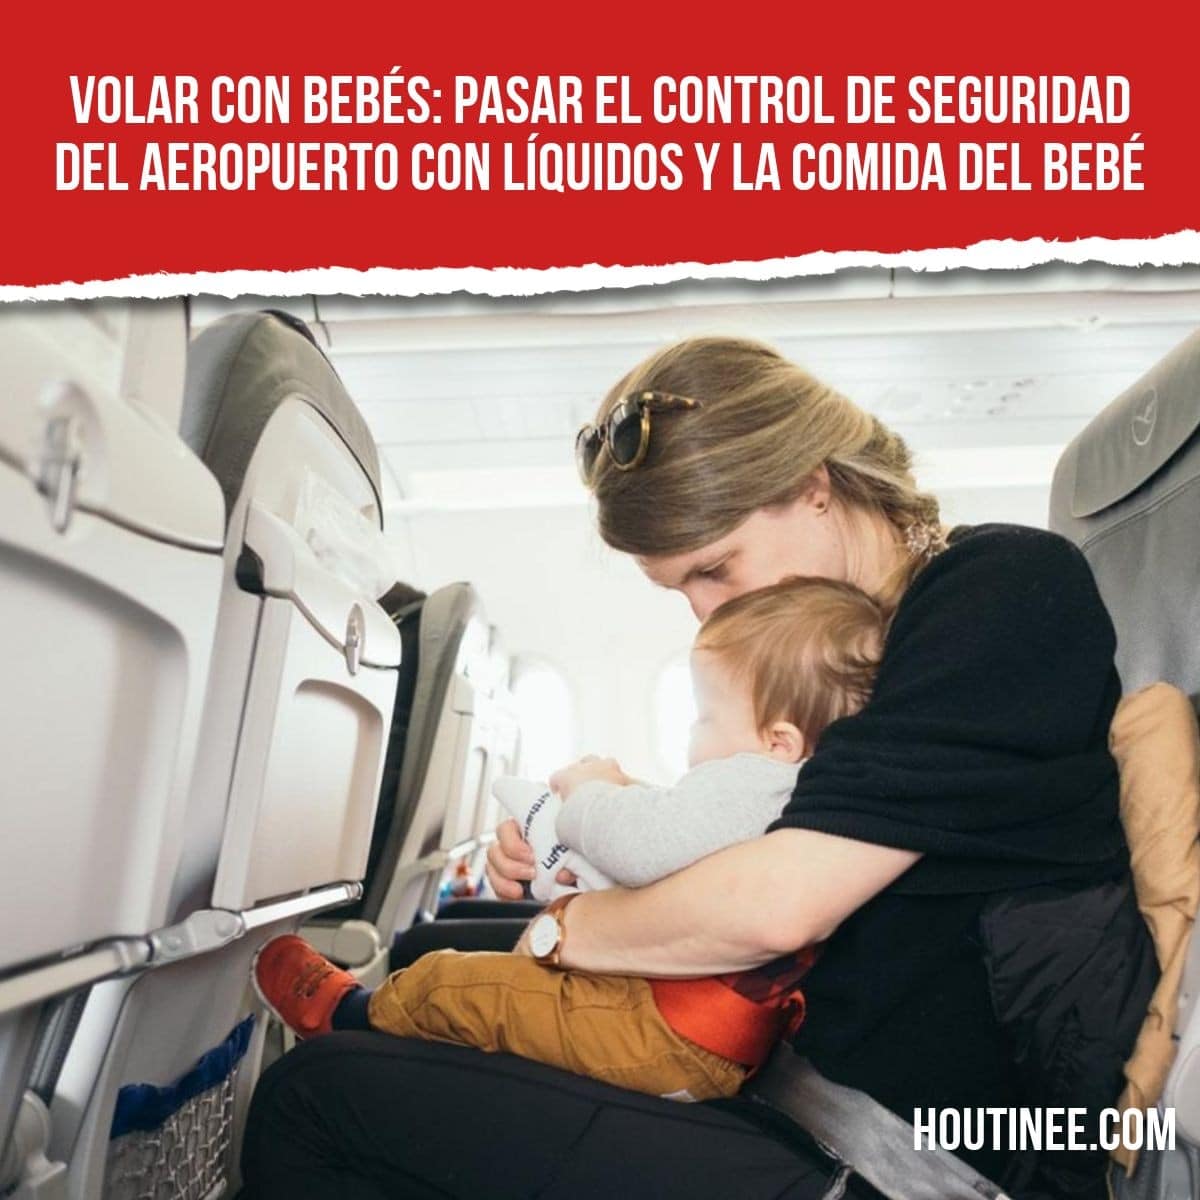 Volar con bebés: Pasar el control de seguridad del aeropuerto con líquidos y la comida del bebé